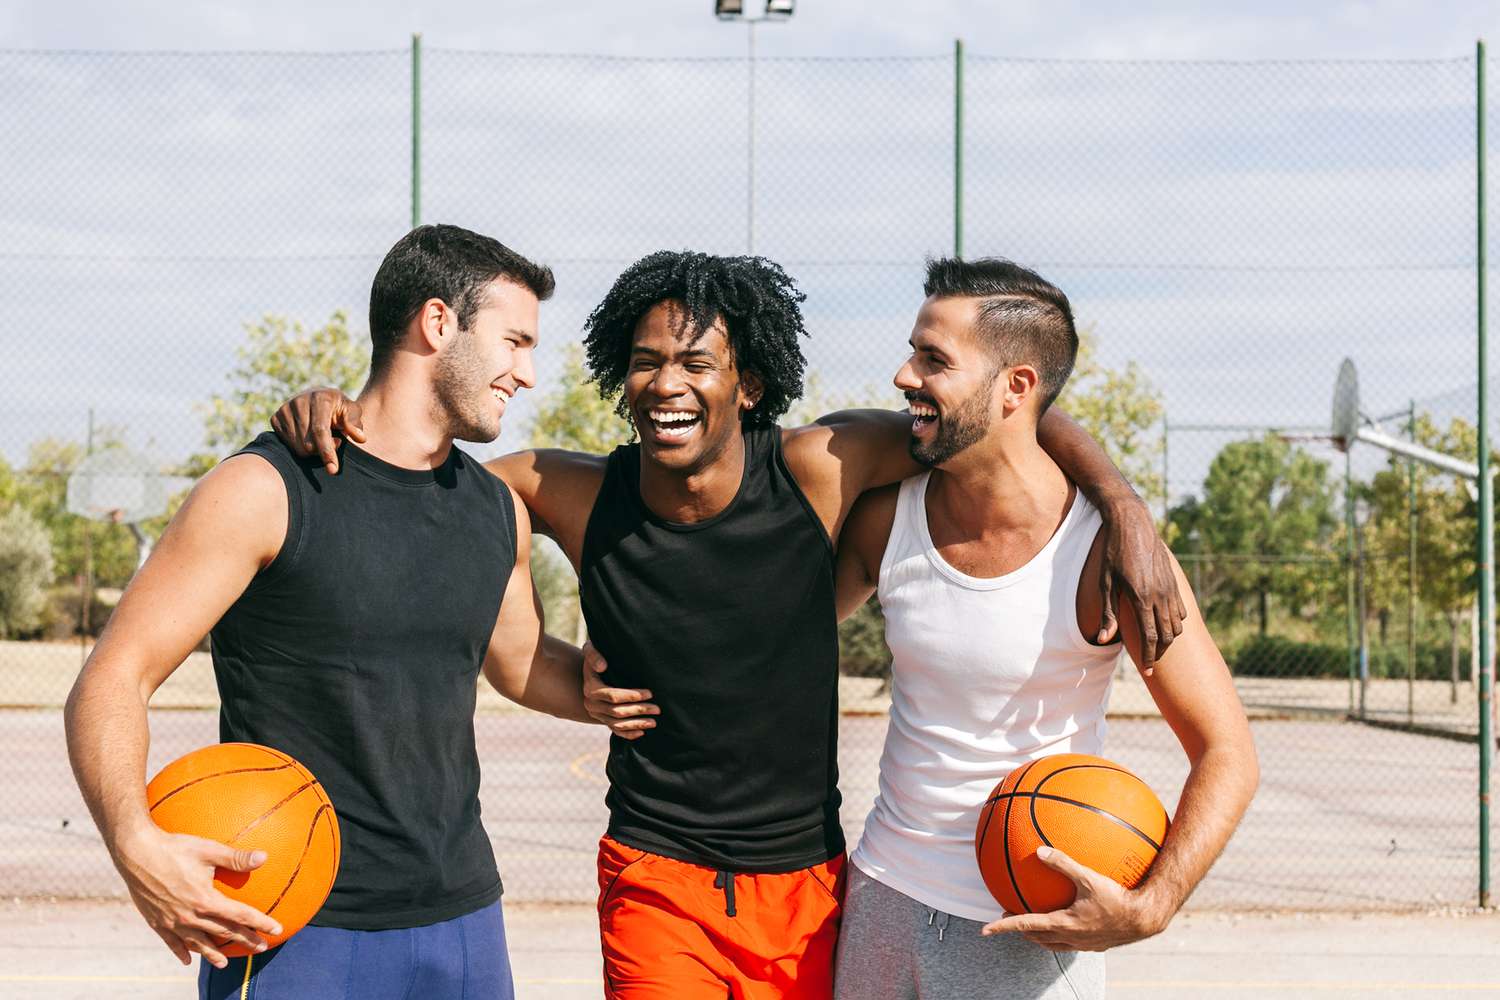 Vrienden die plezier hebben tijdens een rust na een straatbasketbalwedstrijd